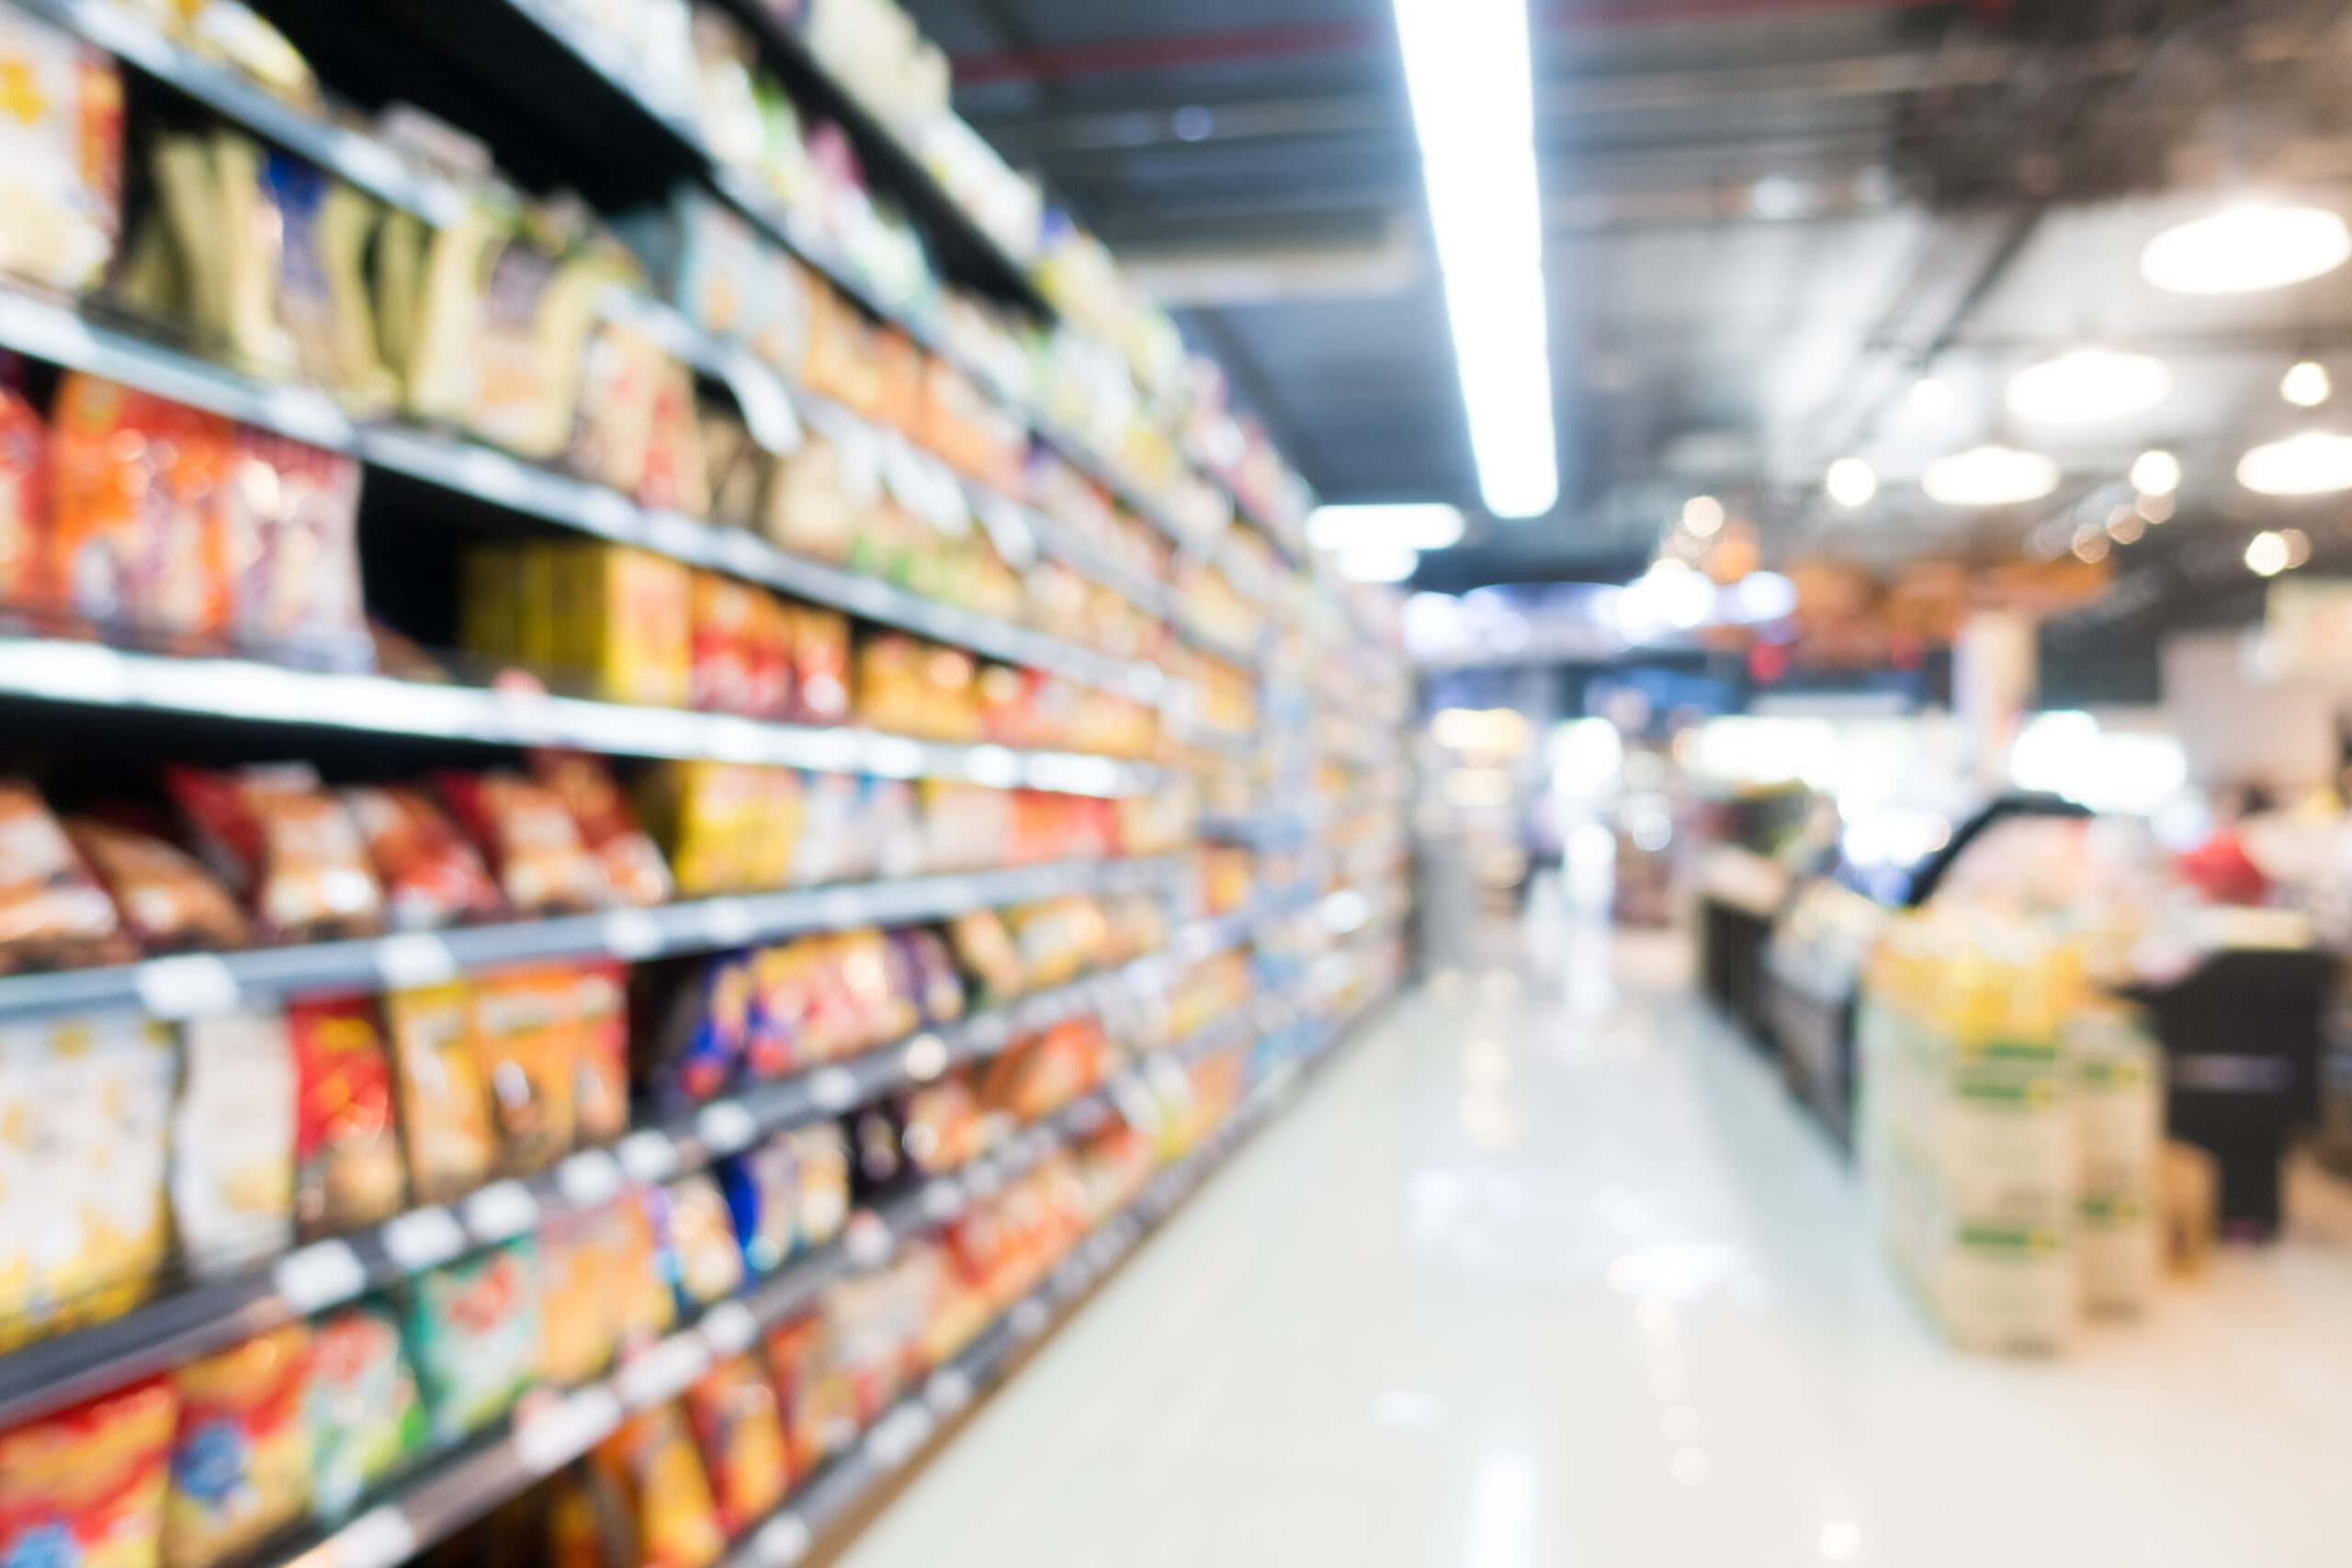 Los estantes del supermercado están acomodados segun estrategias que establecen para que los consumidores logren caer en la mercadotecnia.